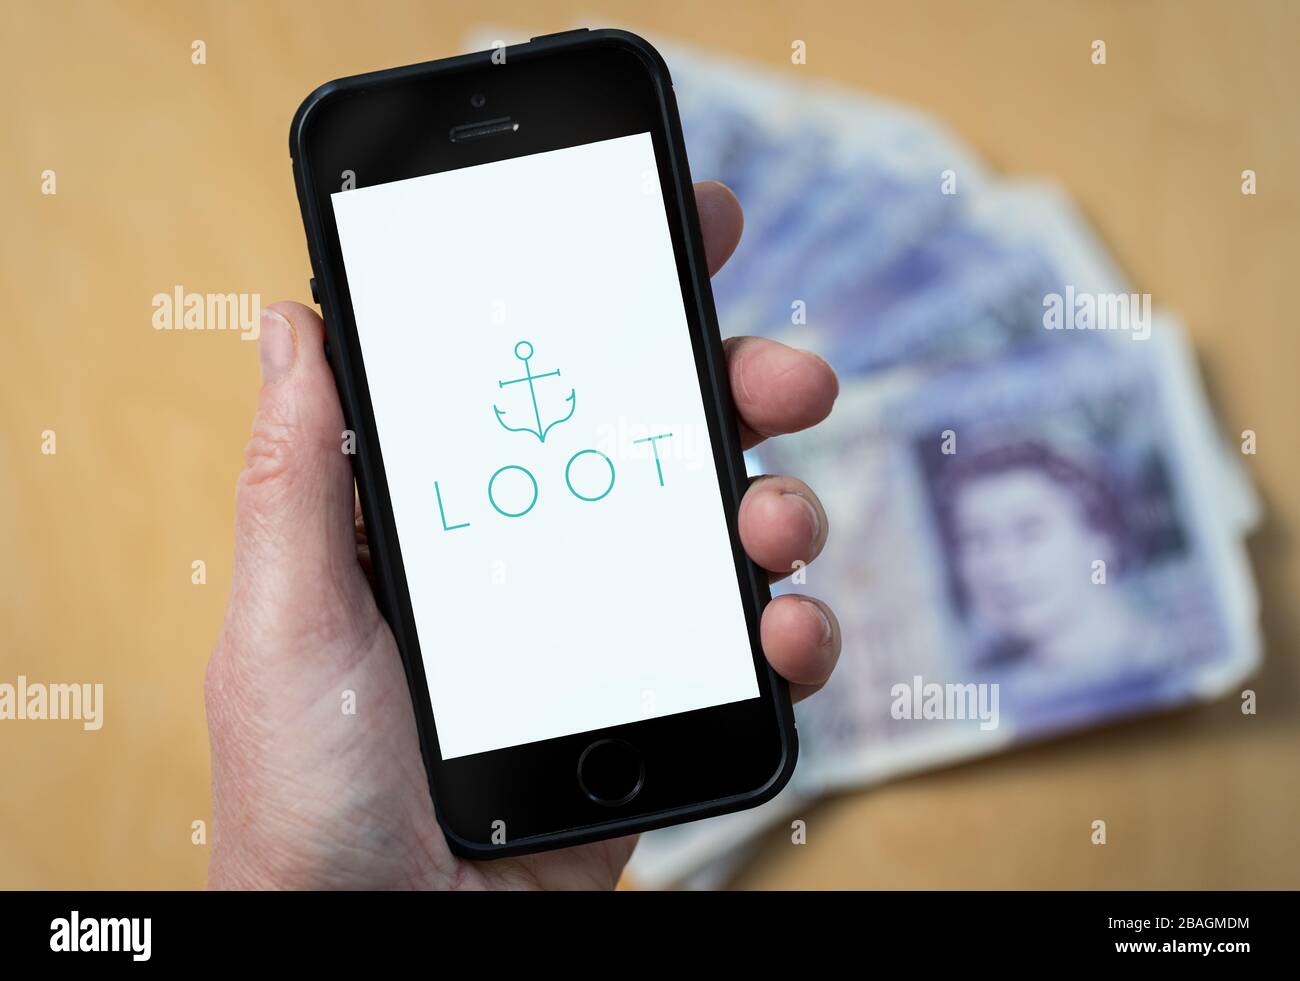 Eine Frau, die auf einem Handy das Logo von Loot Digital Banking betrachtet. (Nur redaktionelle Verwendung) Stockfoto